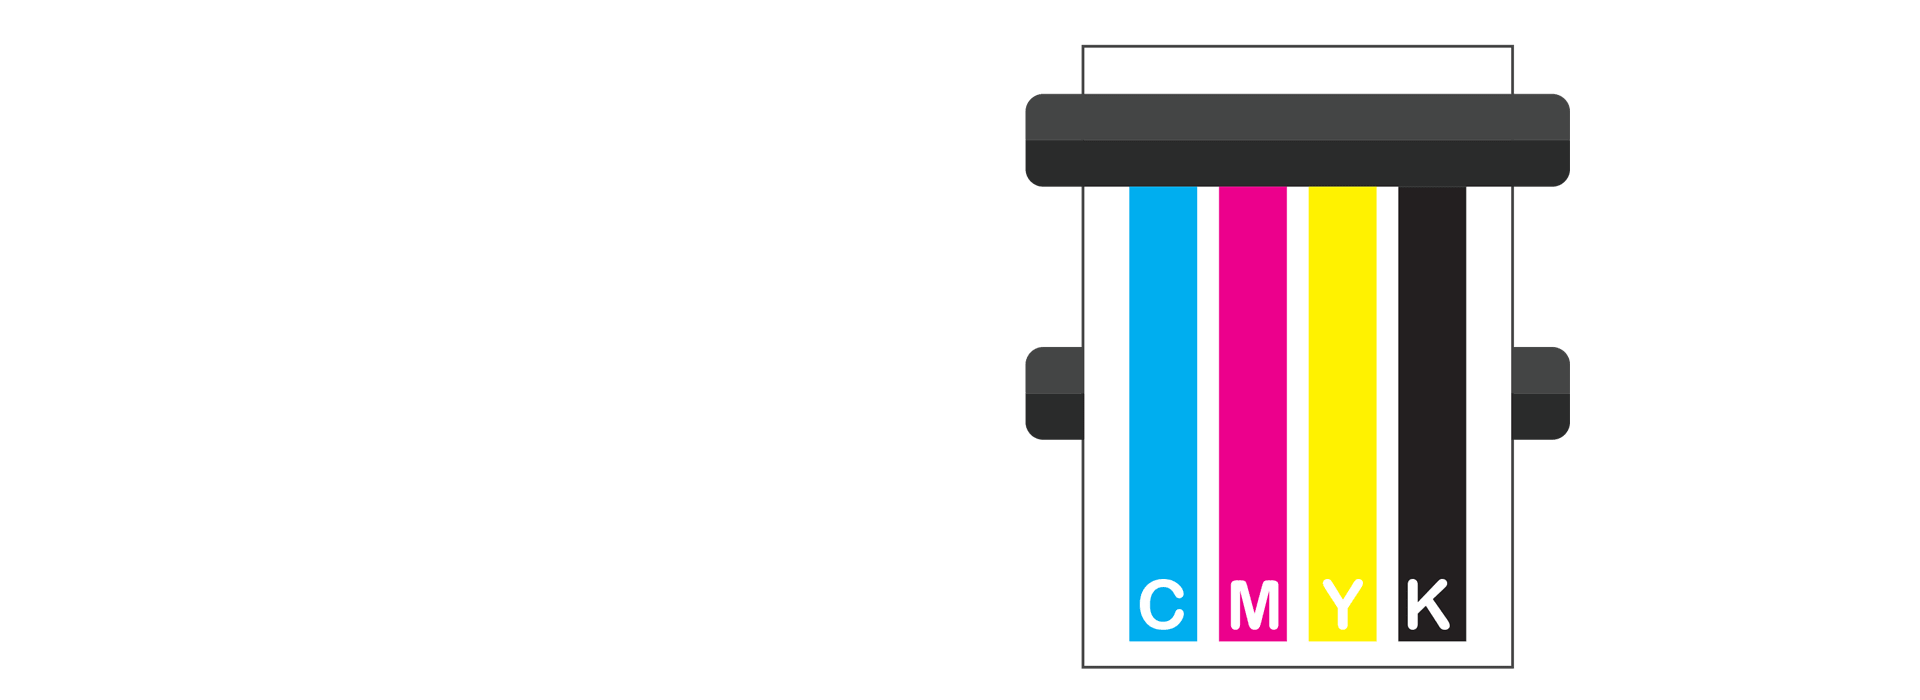 Digital Printers CMYK Colour Model Graphic Element